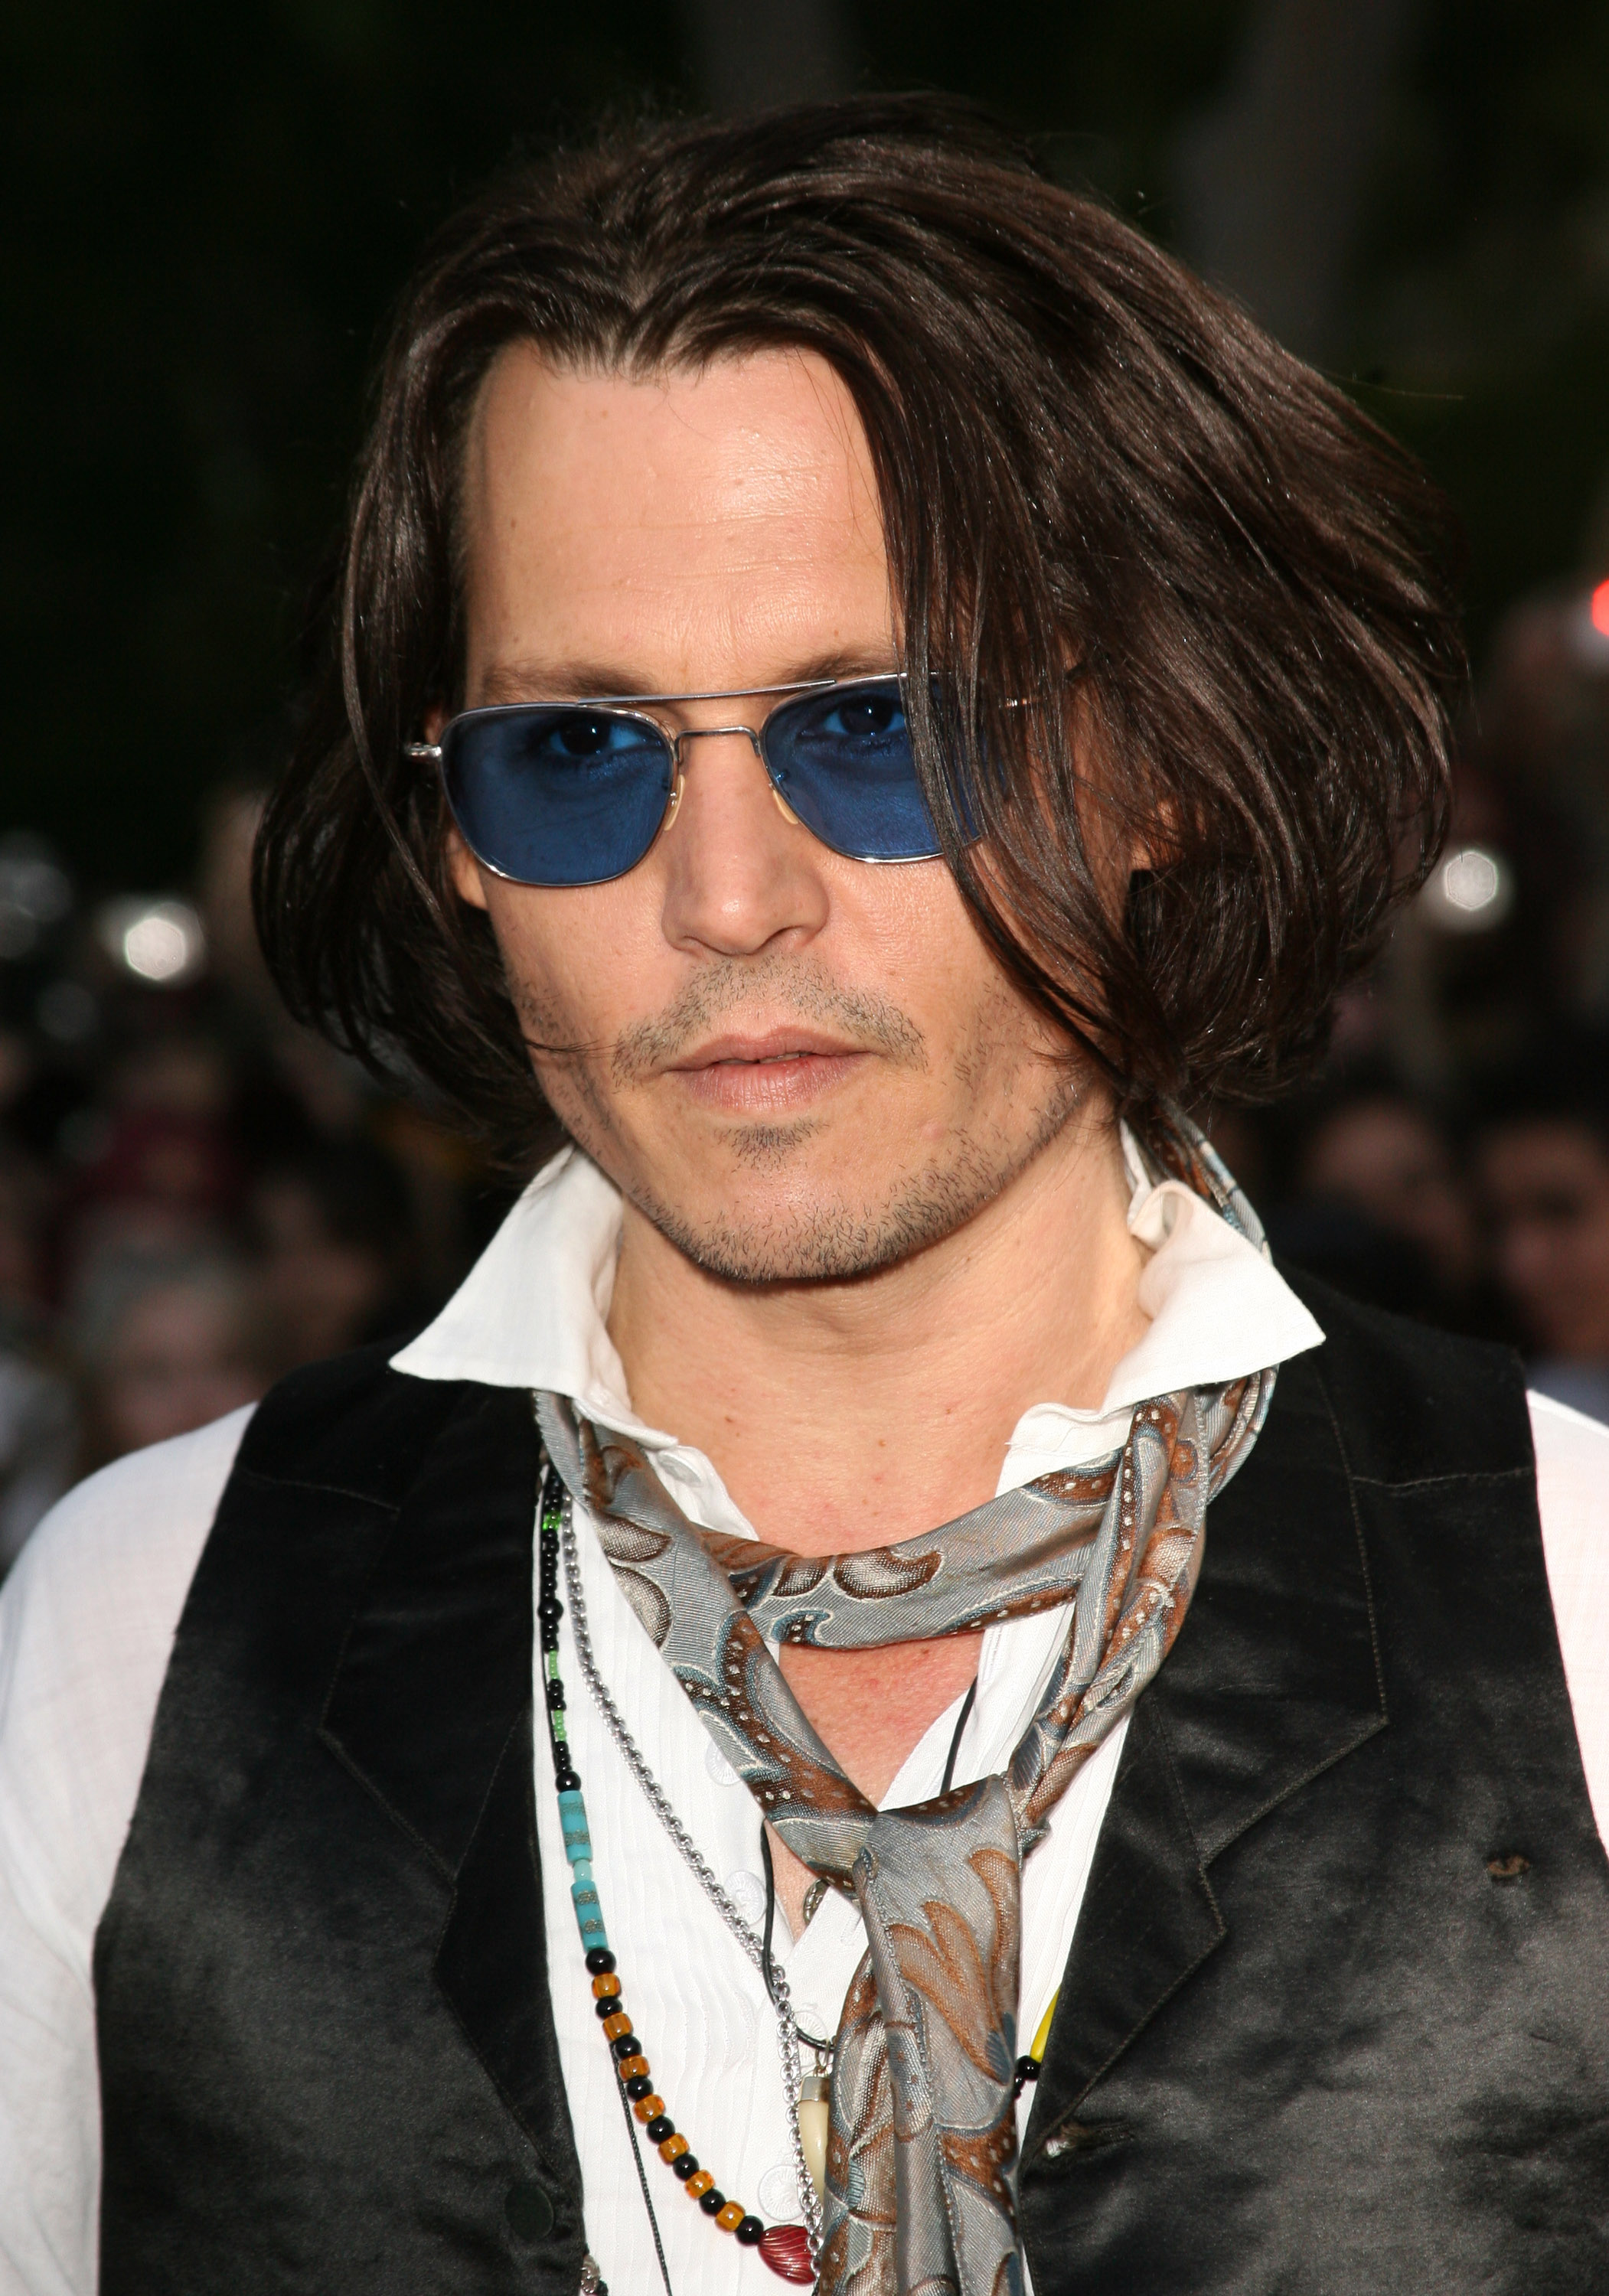 Johnny Depp à la première mondiale de "Pirates des Caraïbes : à la fin du monde" à Anaheim, Californie, le 19 mai 2007 | Source : Getty Images